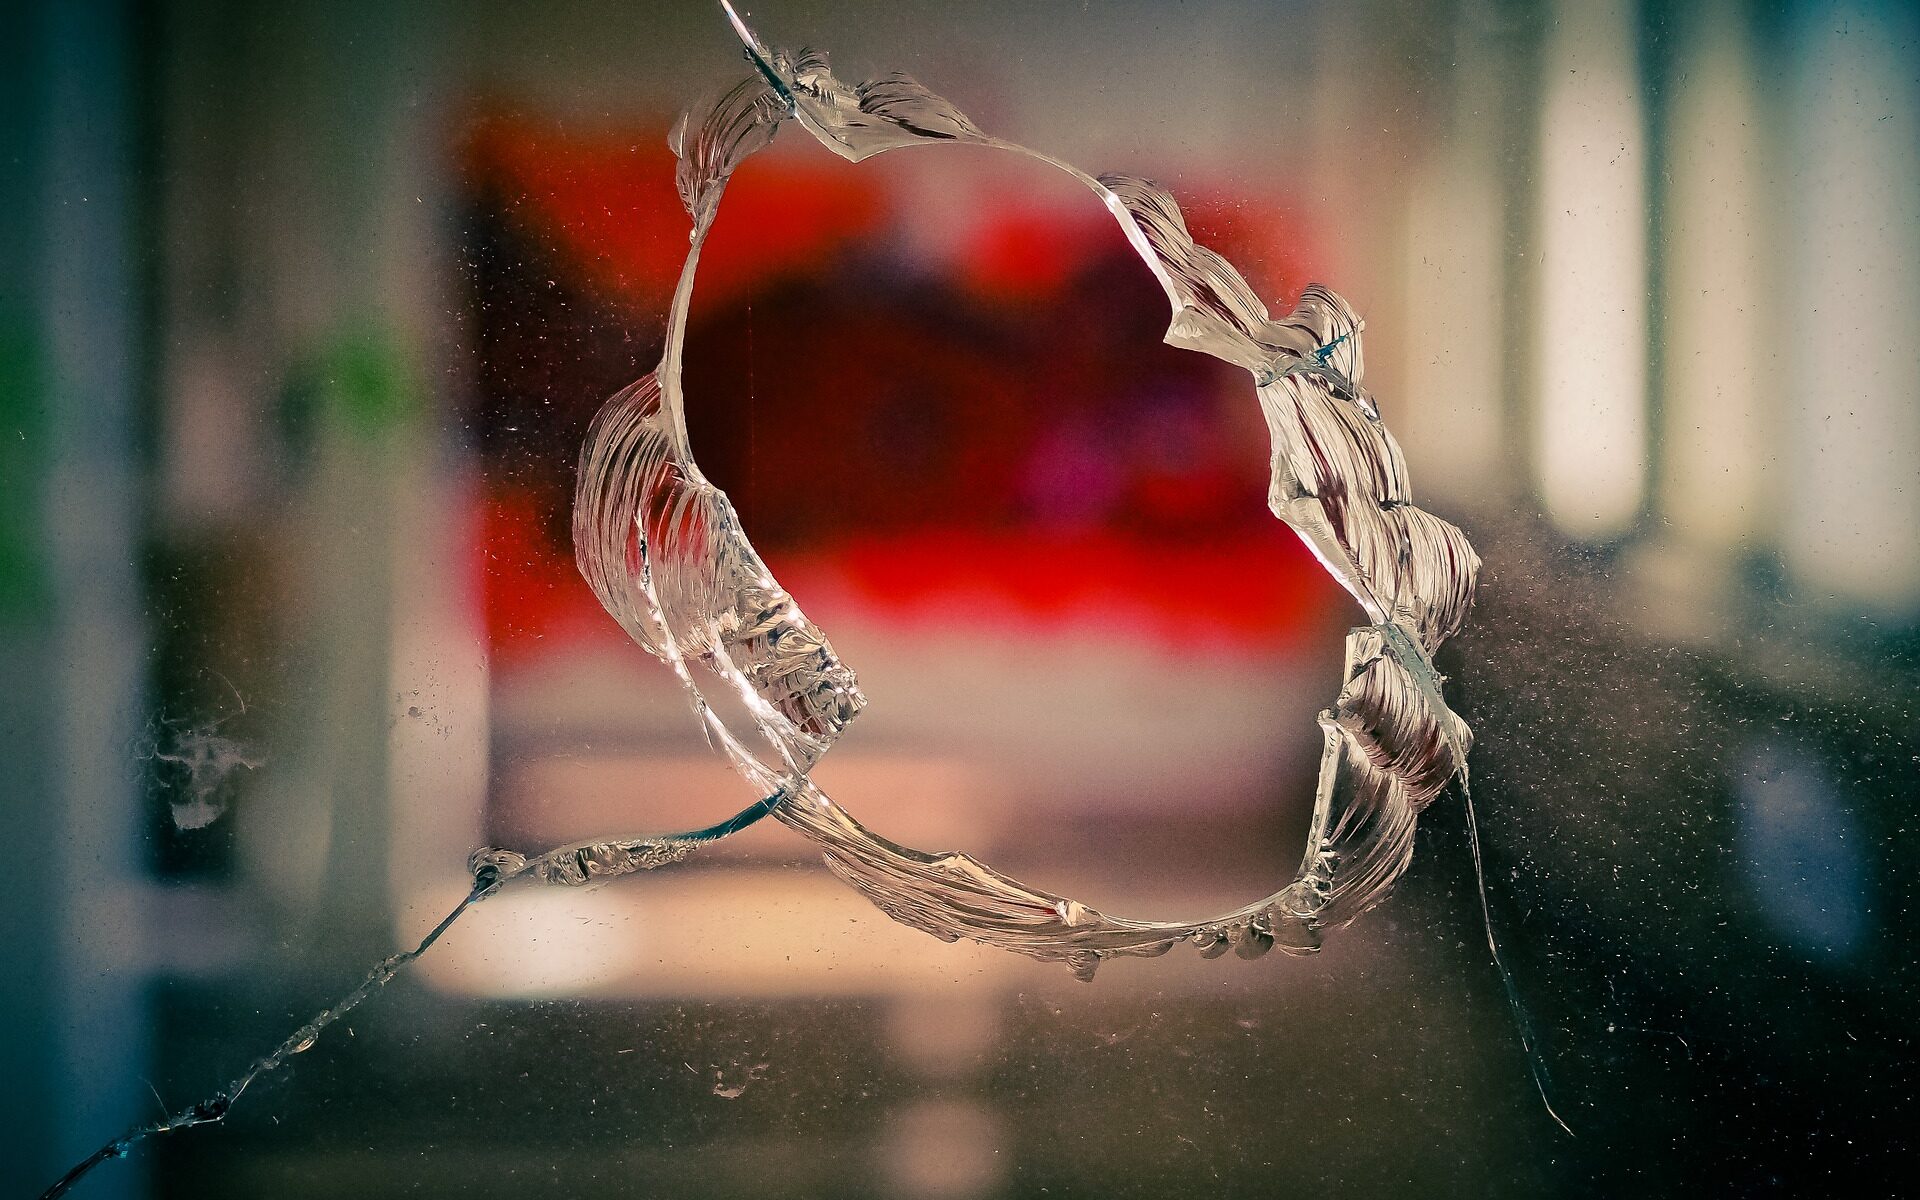 Siniestro seguro de hogar por cristal roto